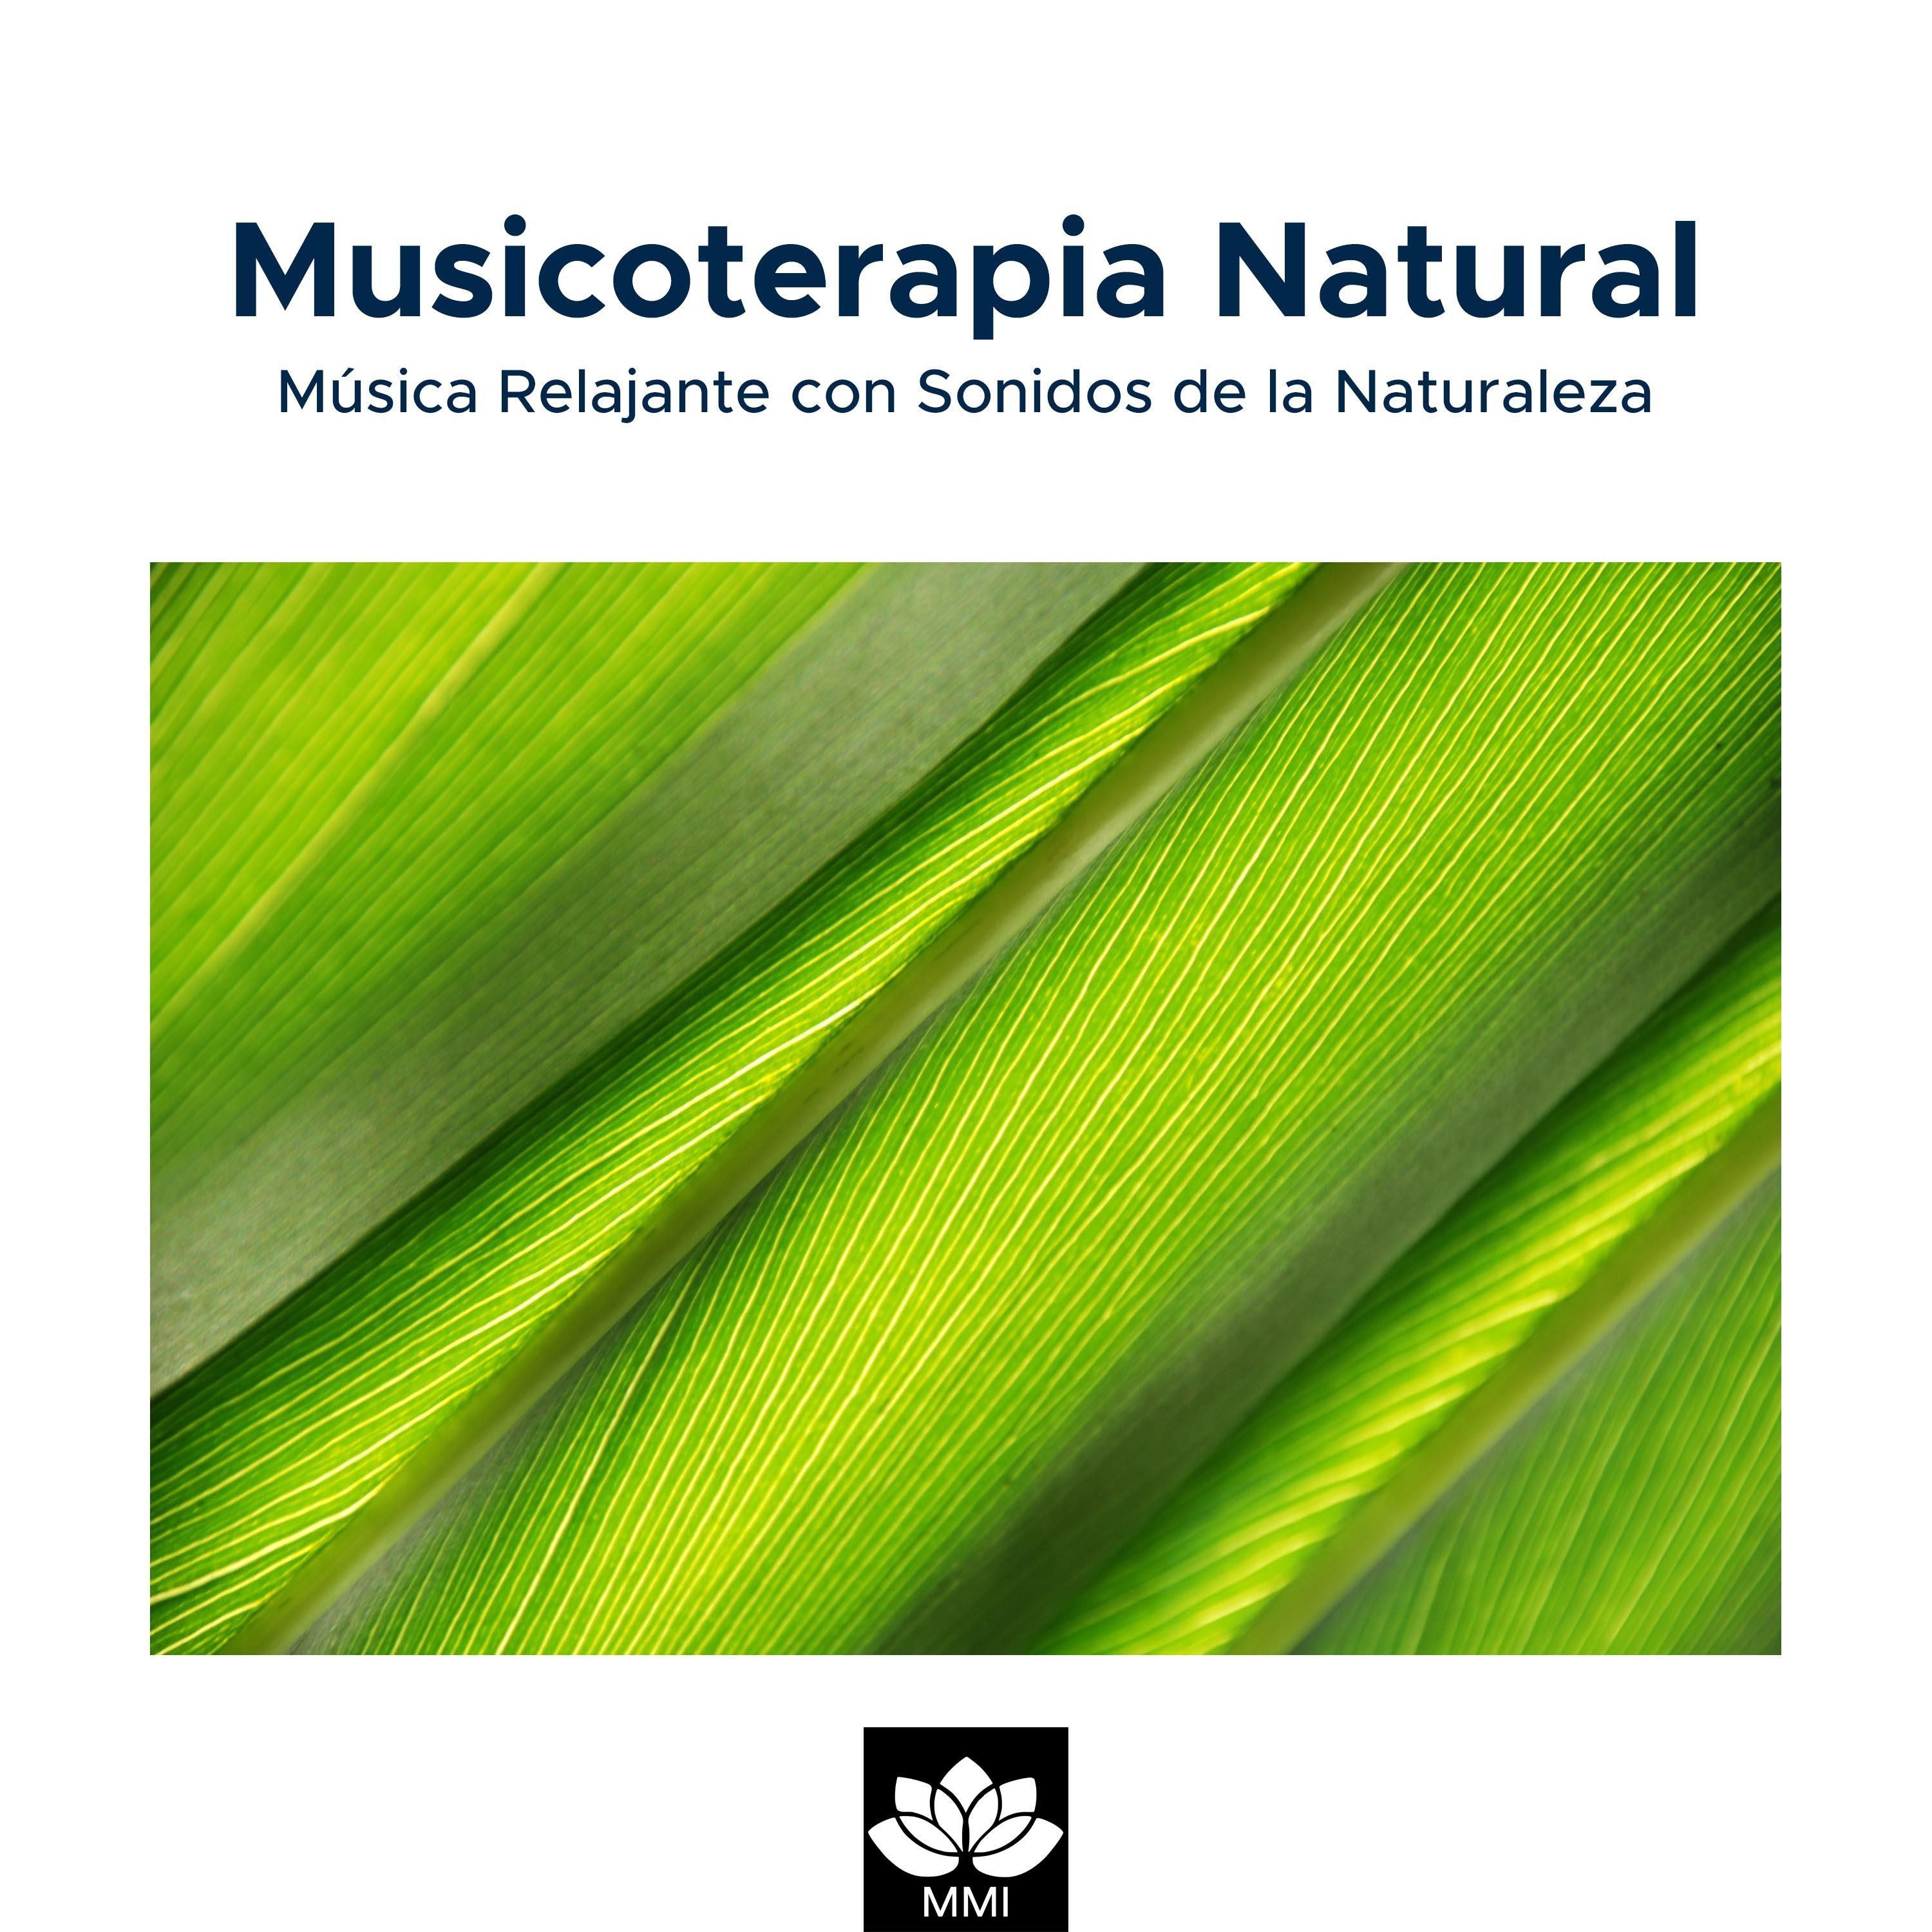 Musicoterapia Natural: Mu sica Relajante con Sonidos de la Naturaleza Lluvia, Olas del Mar, Canto de los Pa jaros, Ranas y Grillos